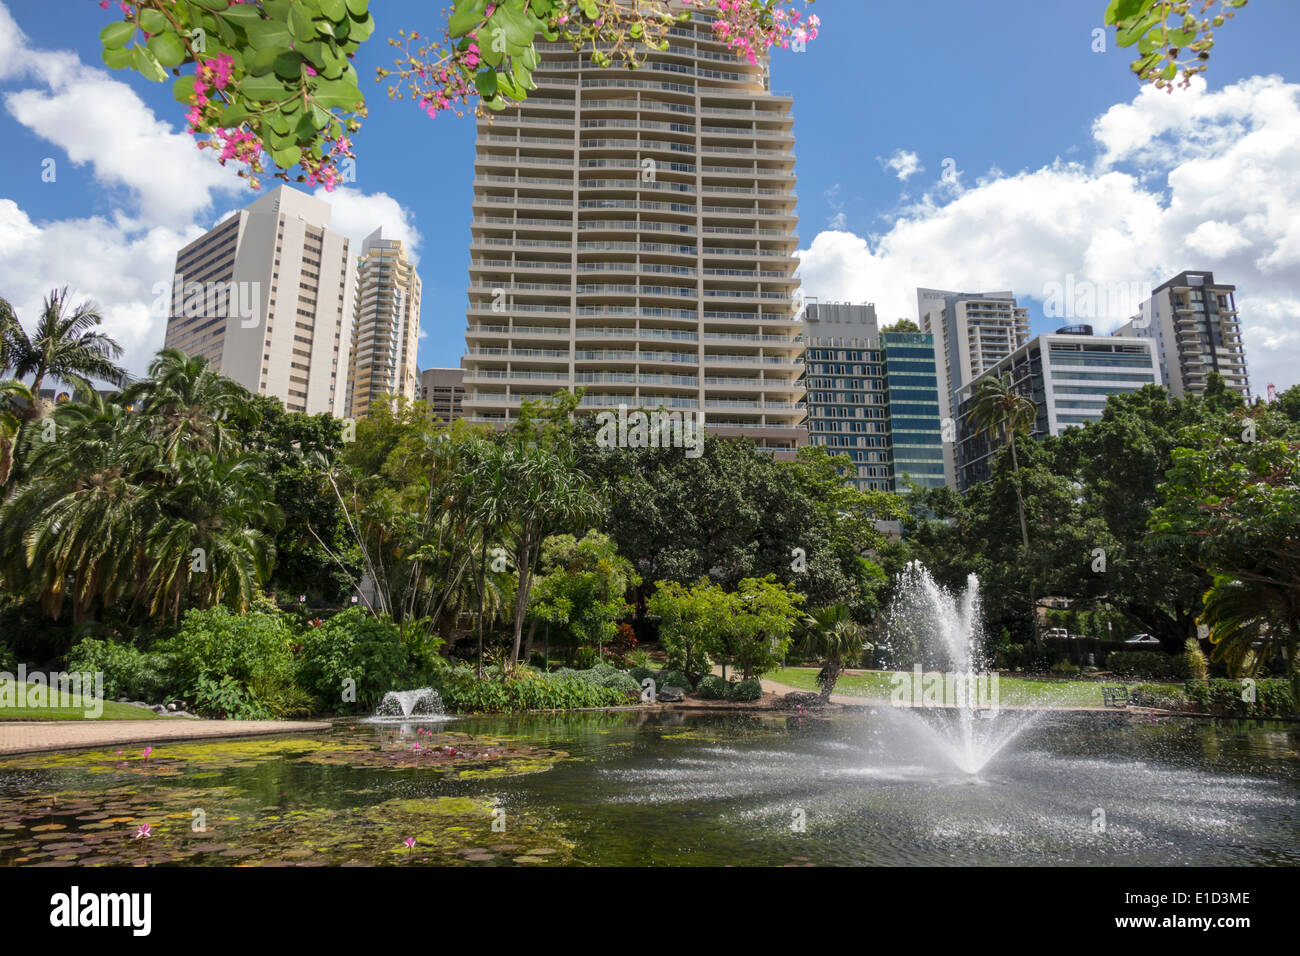 Brisbane Australien, City Botanic Gardens, Skyline, Wolkenkratzer, Gebäude, Bäume, Brunnen, Teich, AU140313011 Stockfoto